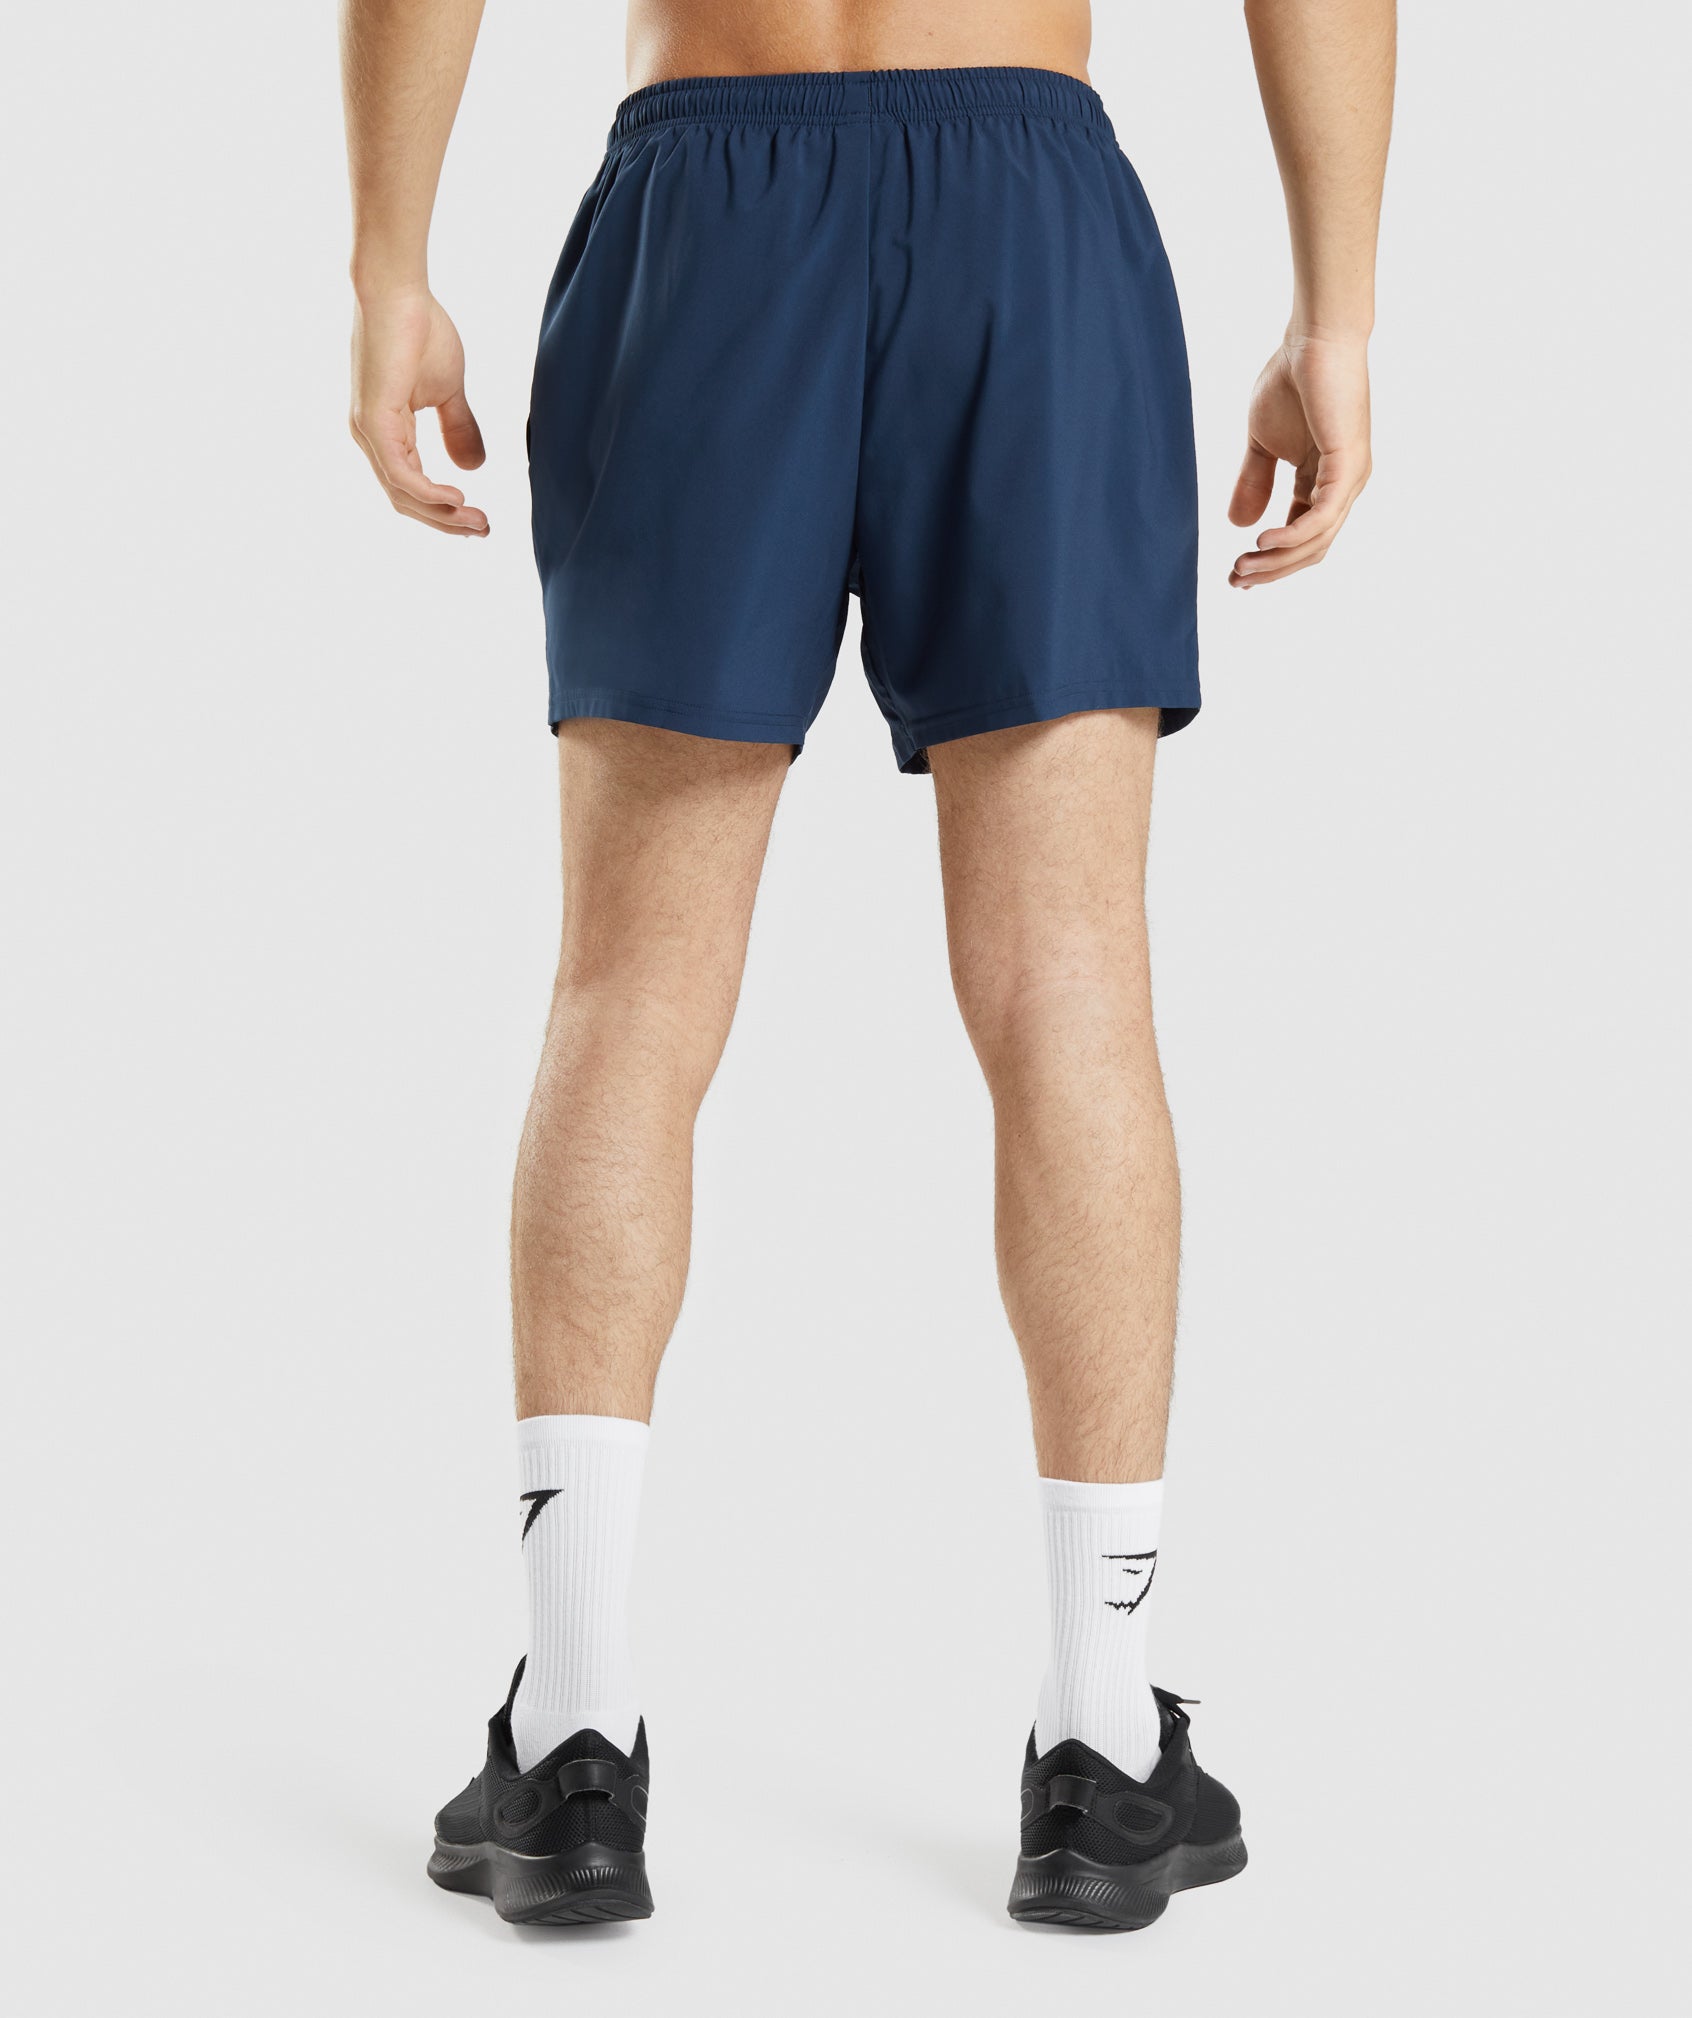 Pantalón corto de hombre 'FUEL' para hacer Crossfit - multicolor – Archfit